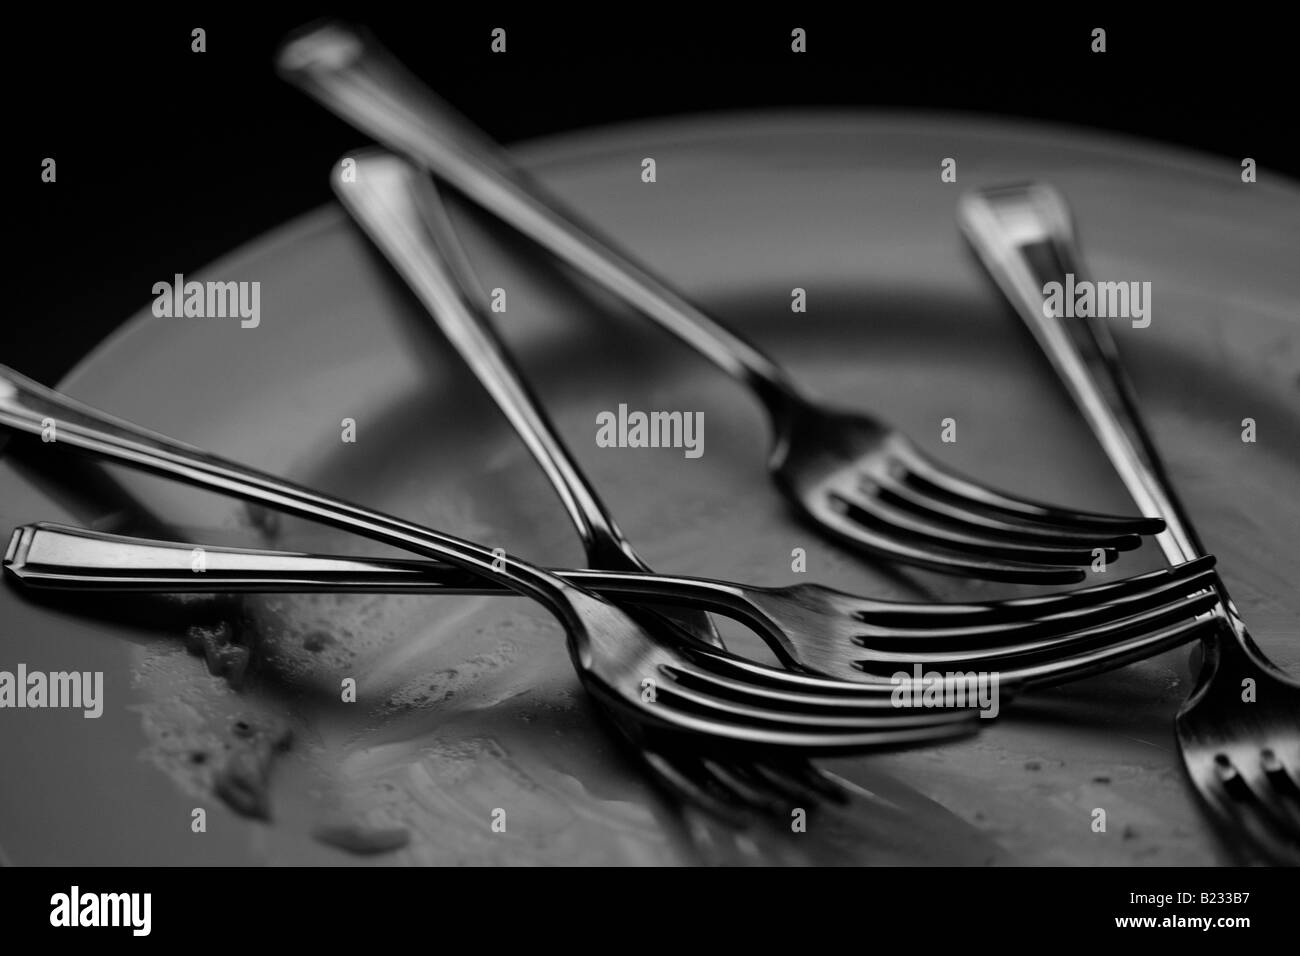 Schwarz / weiß Bild von einem leeren Teller mit fünf Gabeln Stockfoto